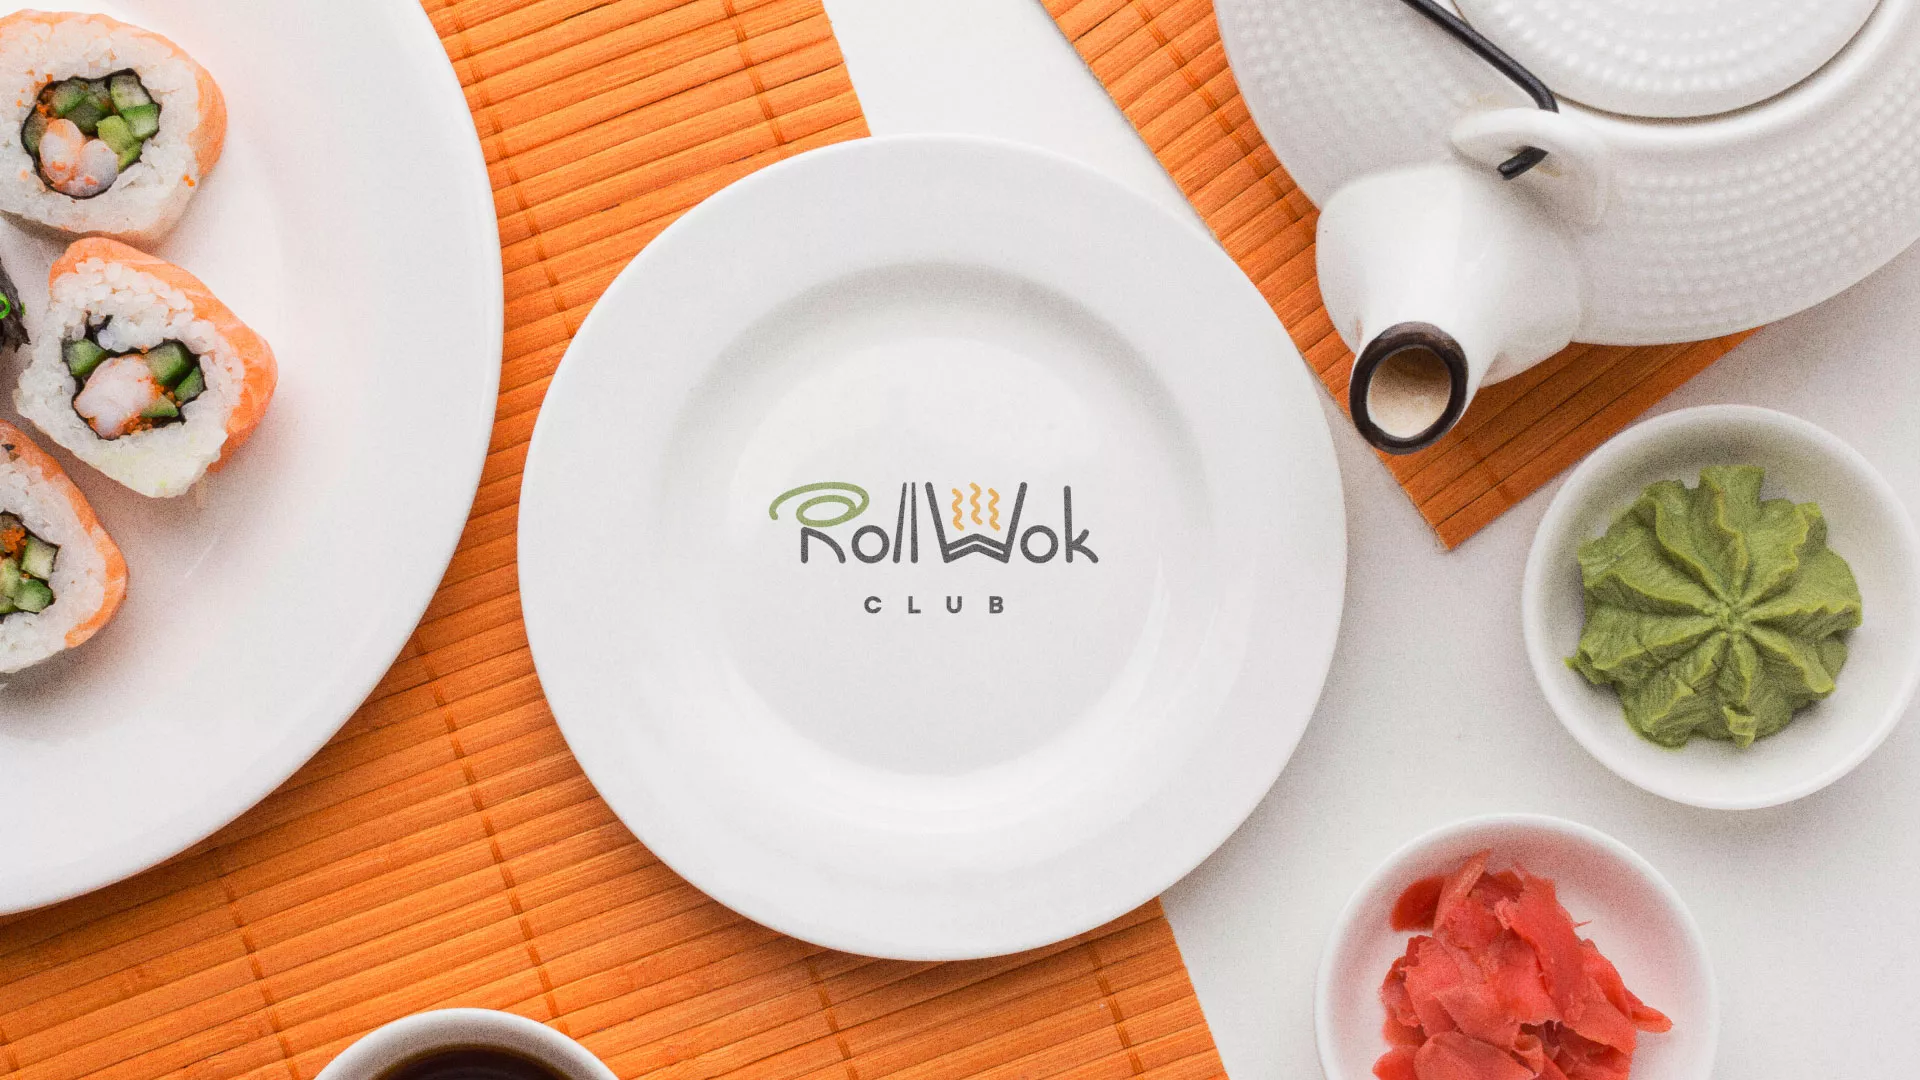 Разработка логотипа и фирменного стиля суши-бара «Roll Wok Club» в Кирсанове